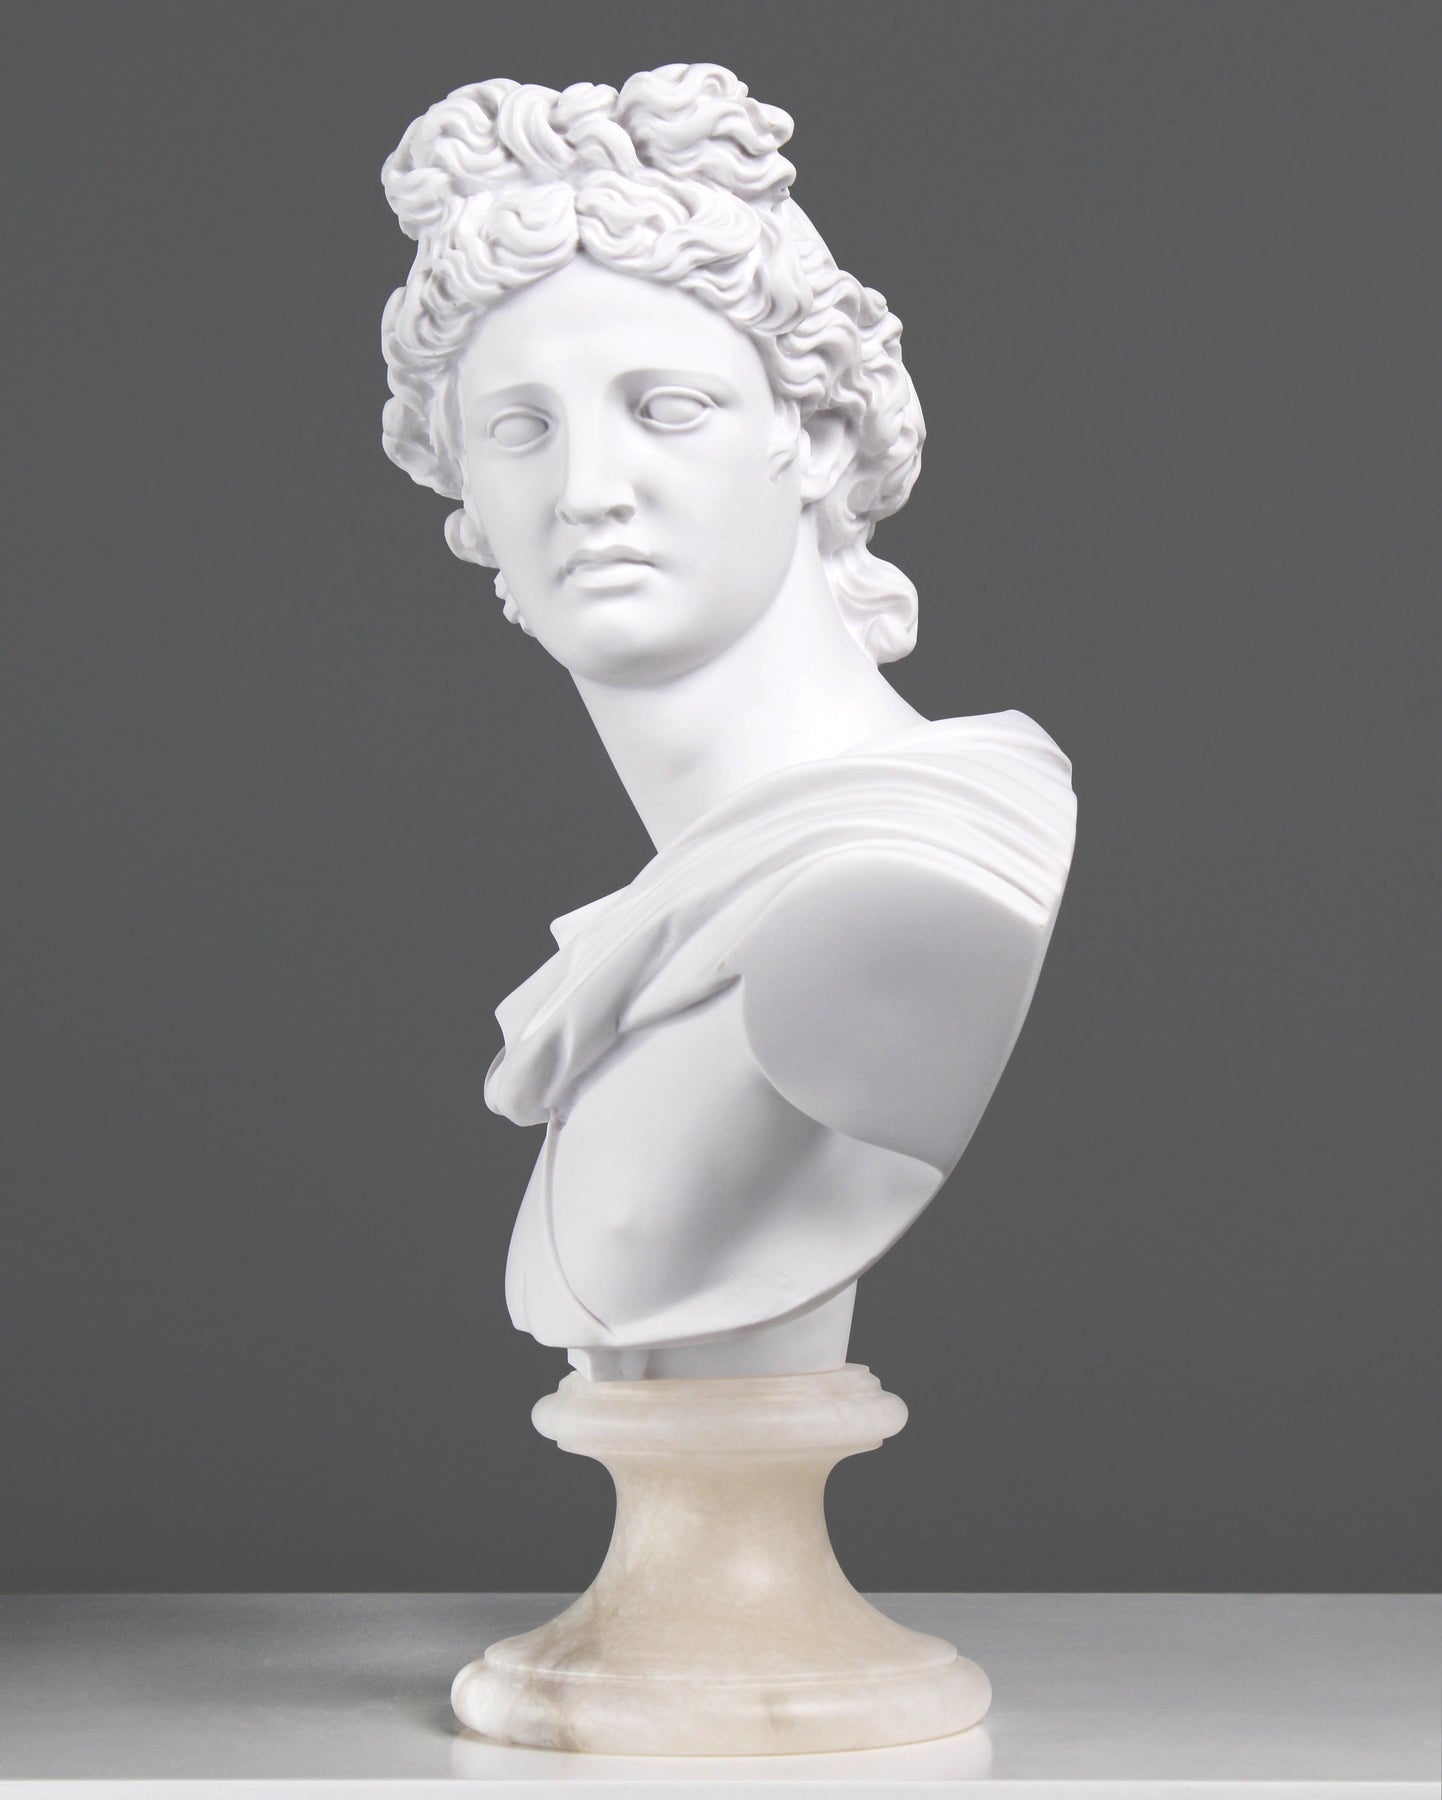 Design Toscano Apollo Mars Bust Statue ql76713